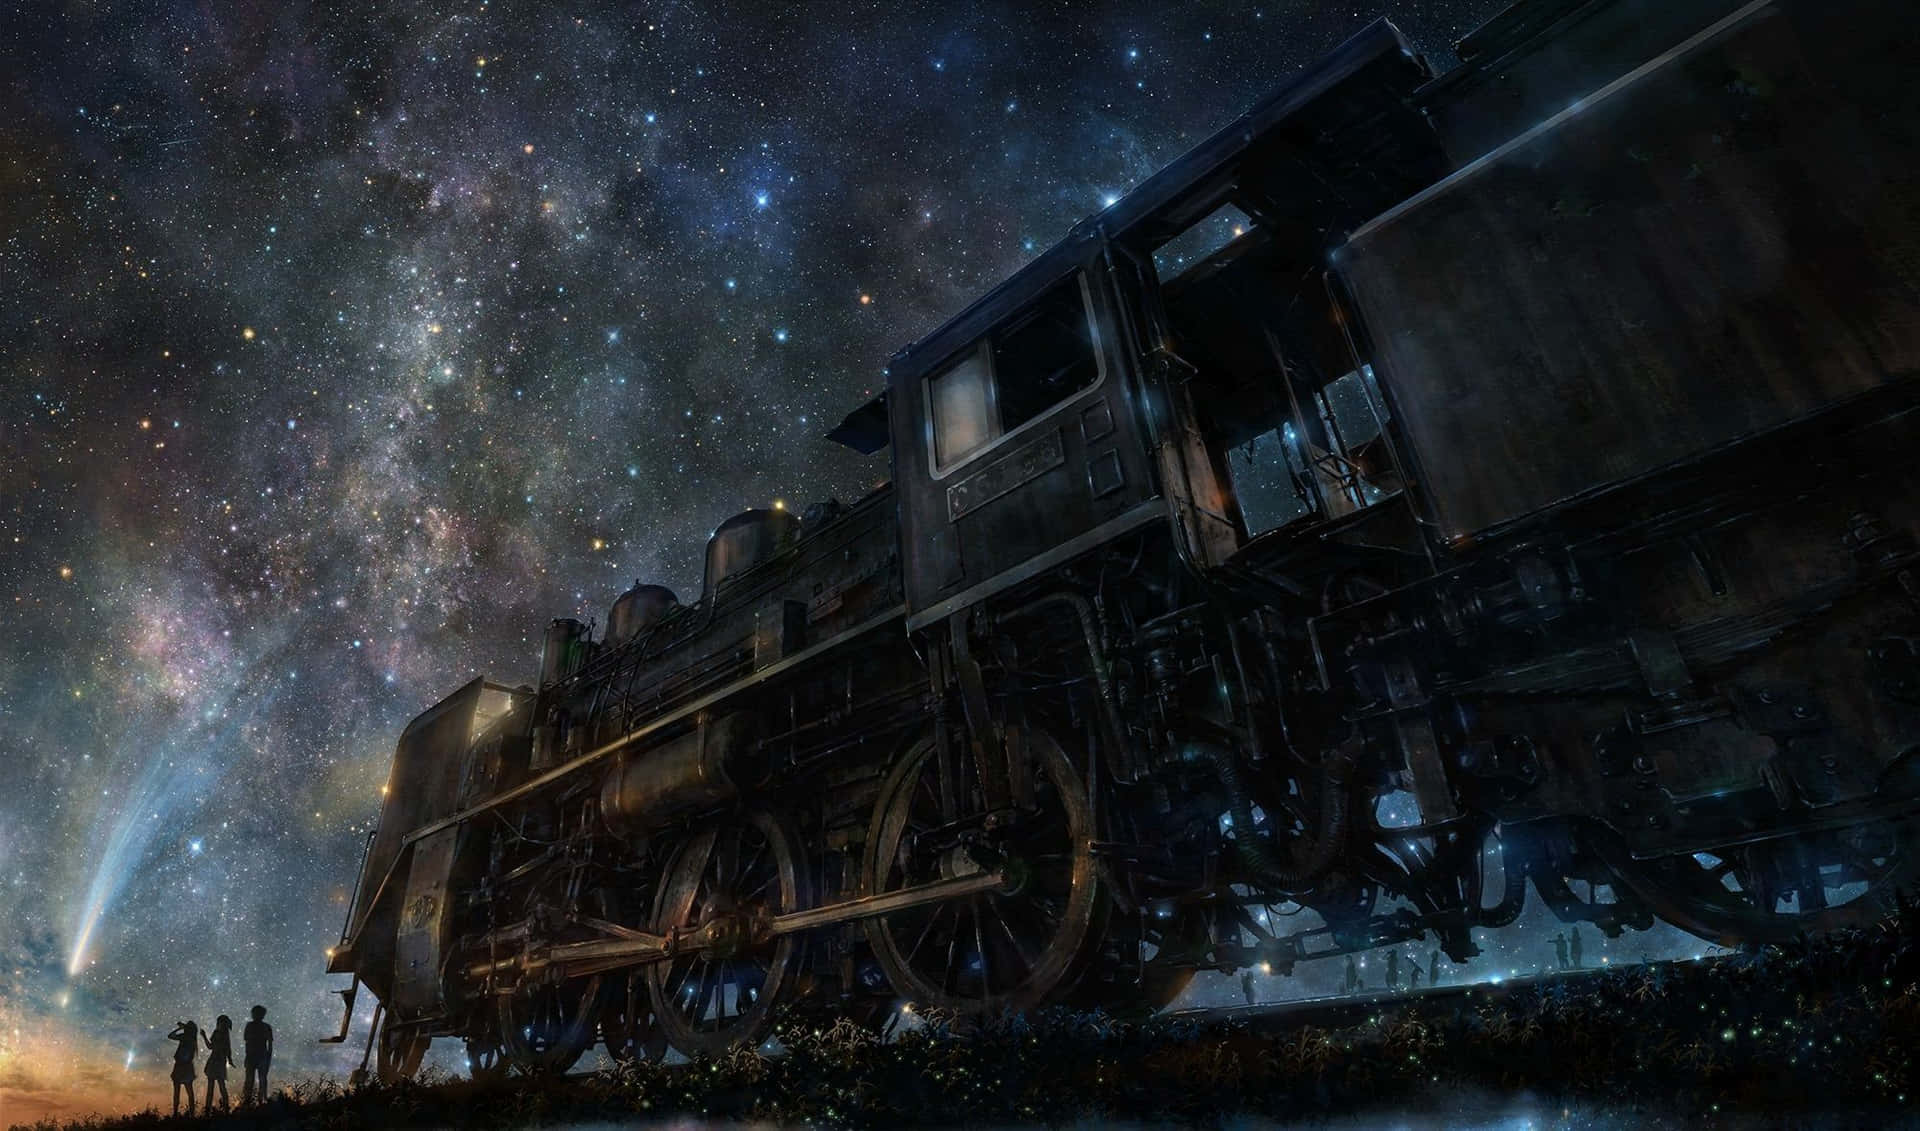 Majestic Old-fashioned Steam Train Across Scenic Landscape